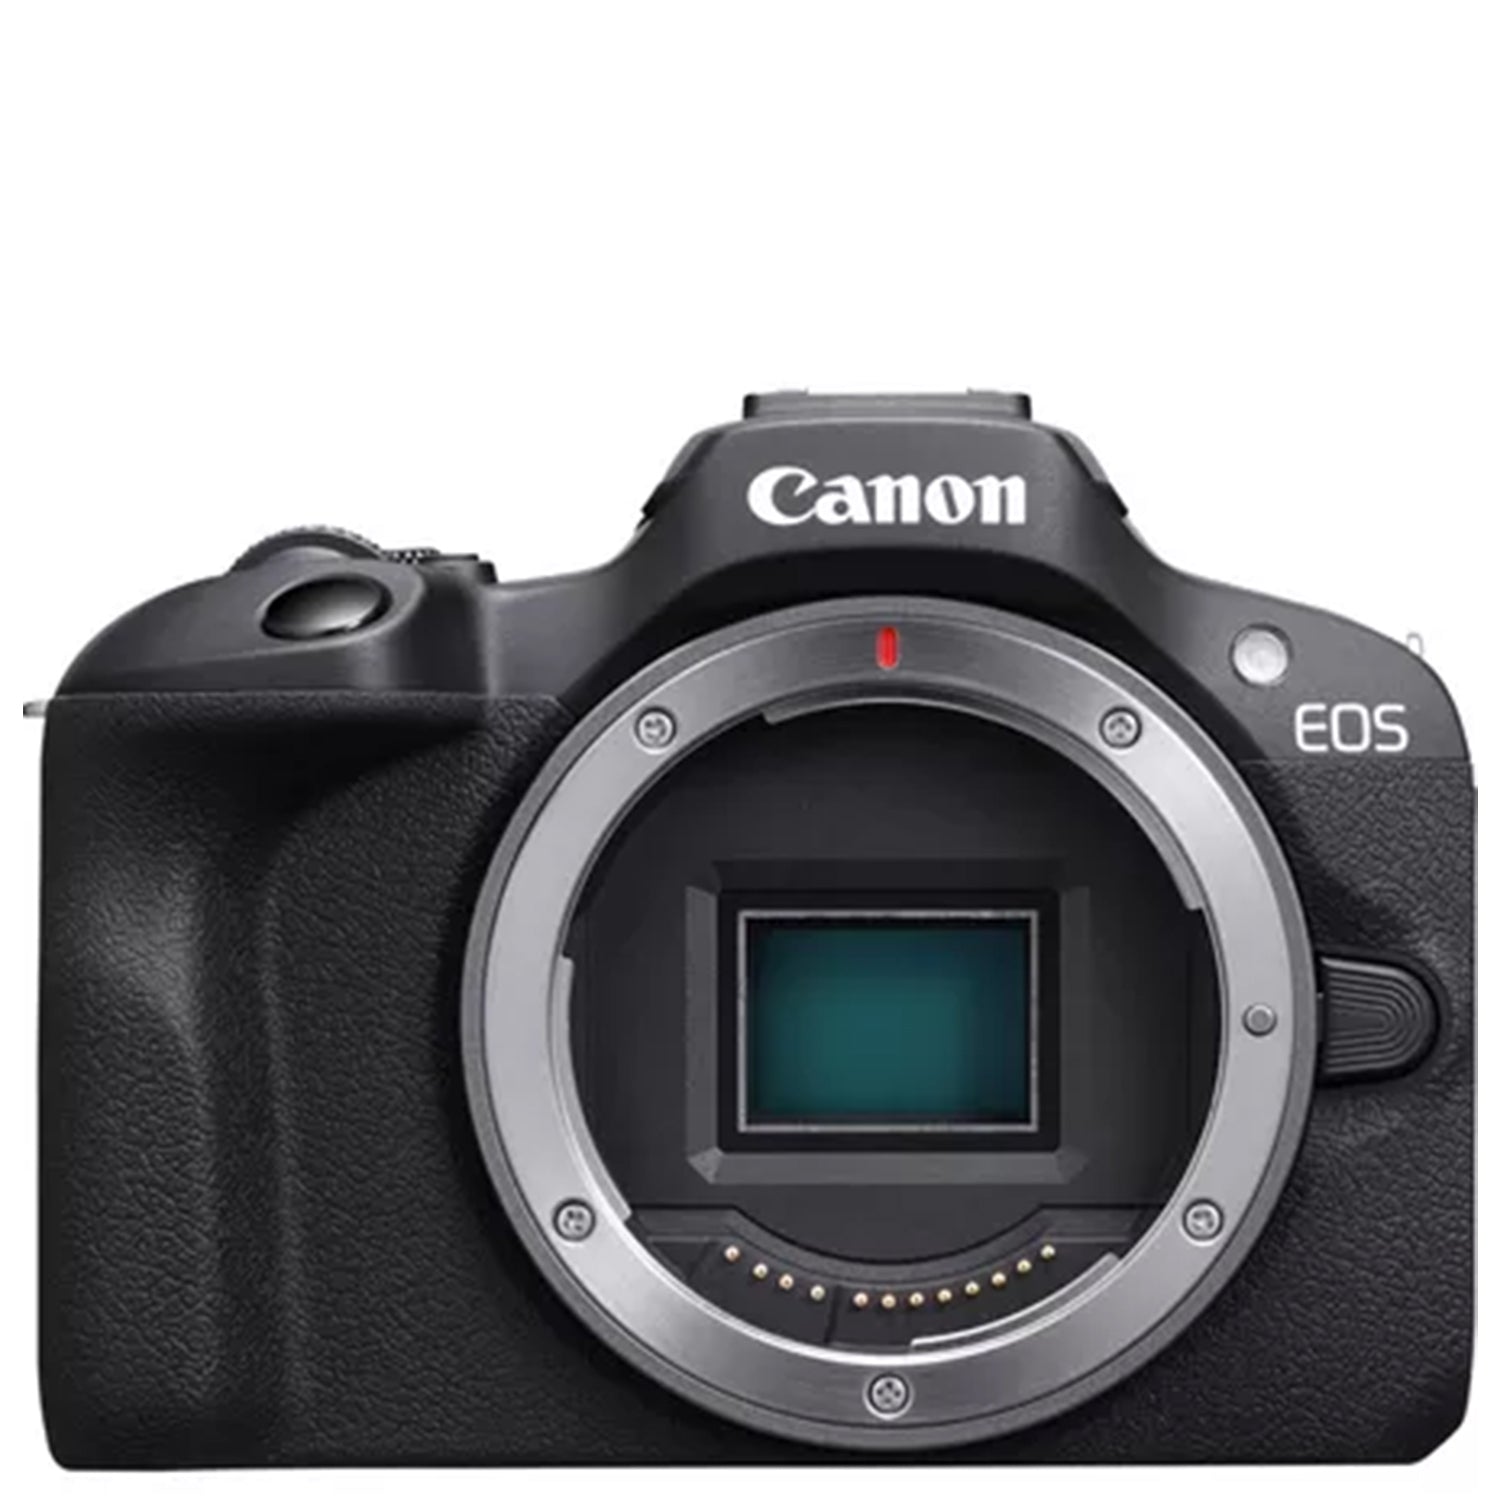 Canon Eos R100 Body - Garanzia Canon Italia - Cine Sud è da 48 anni sul mercato! 6052C003